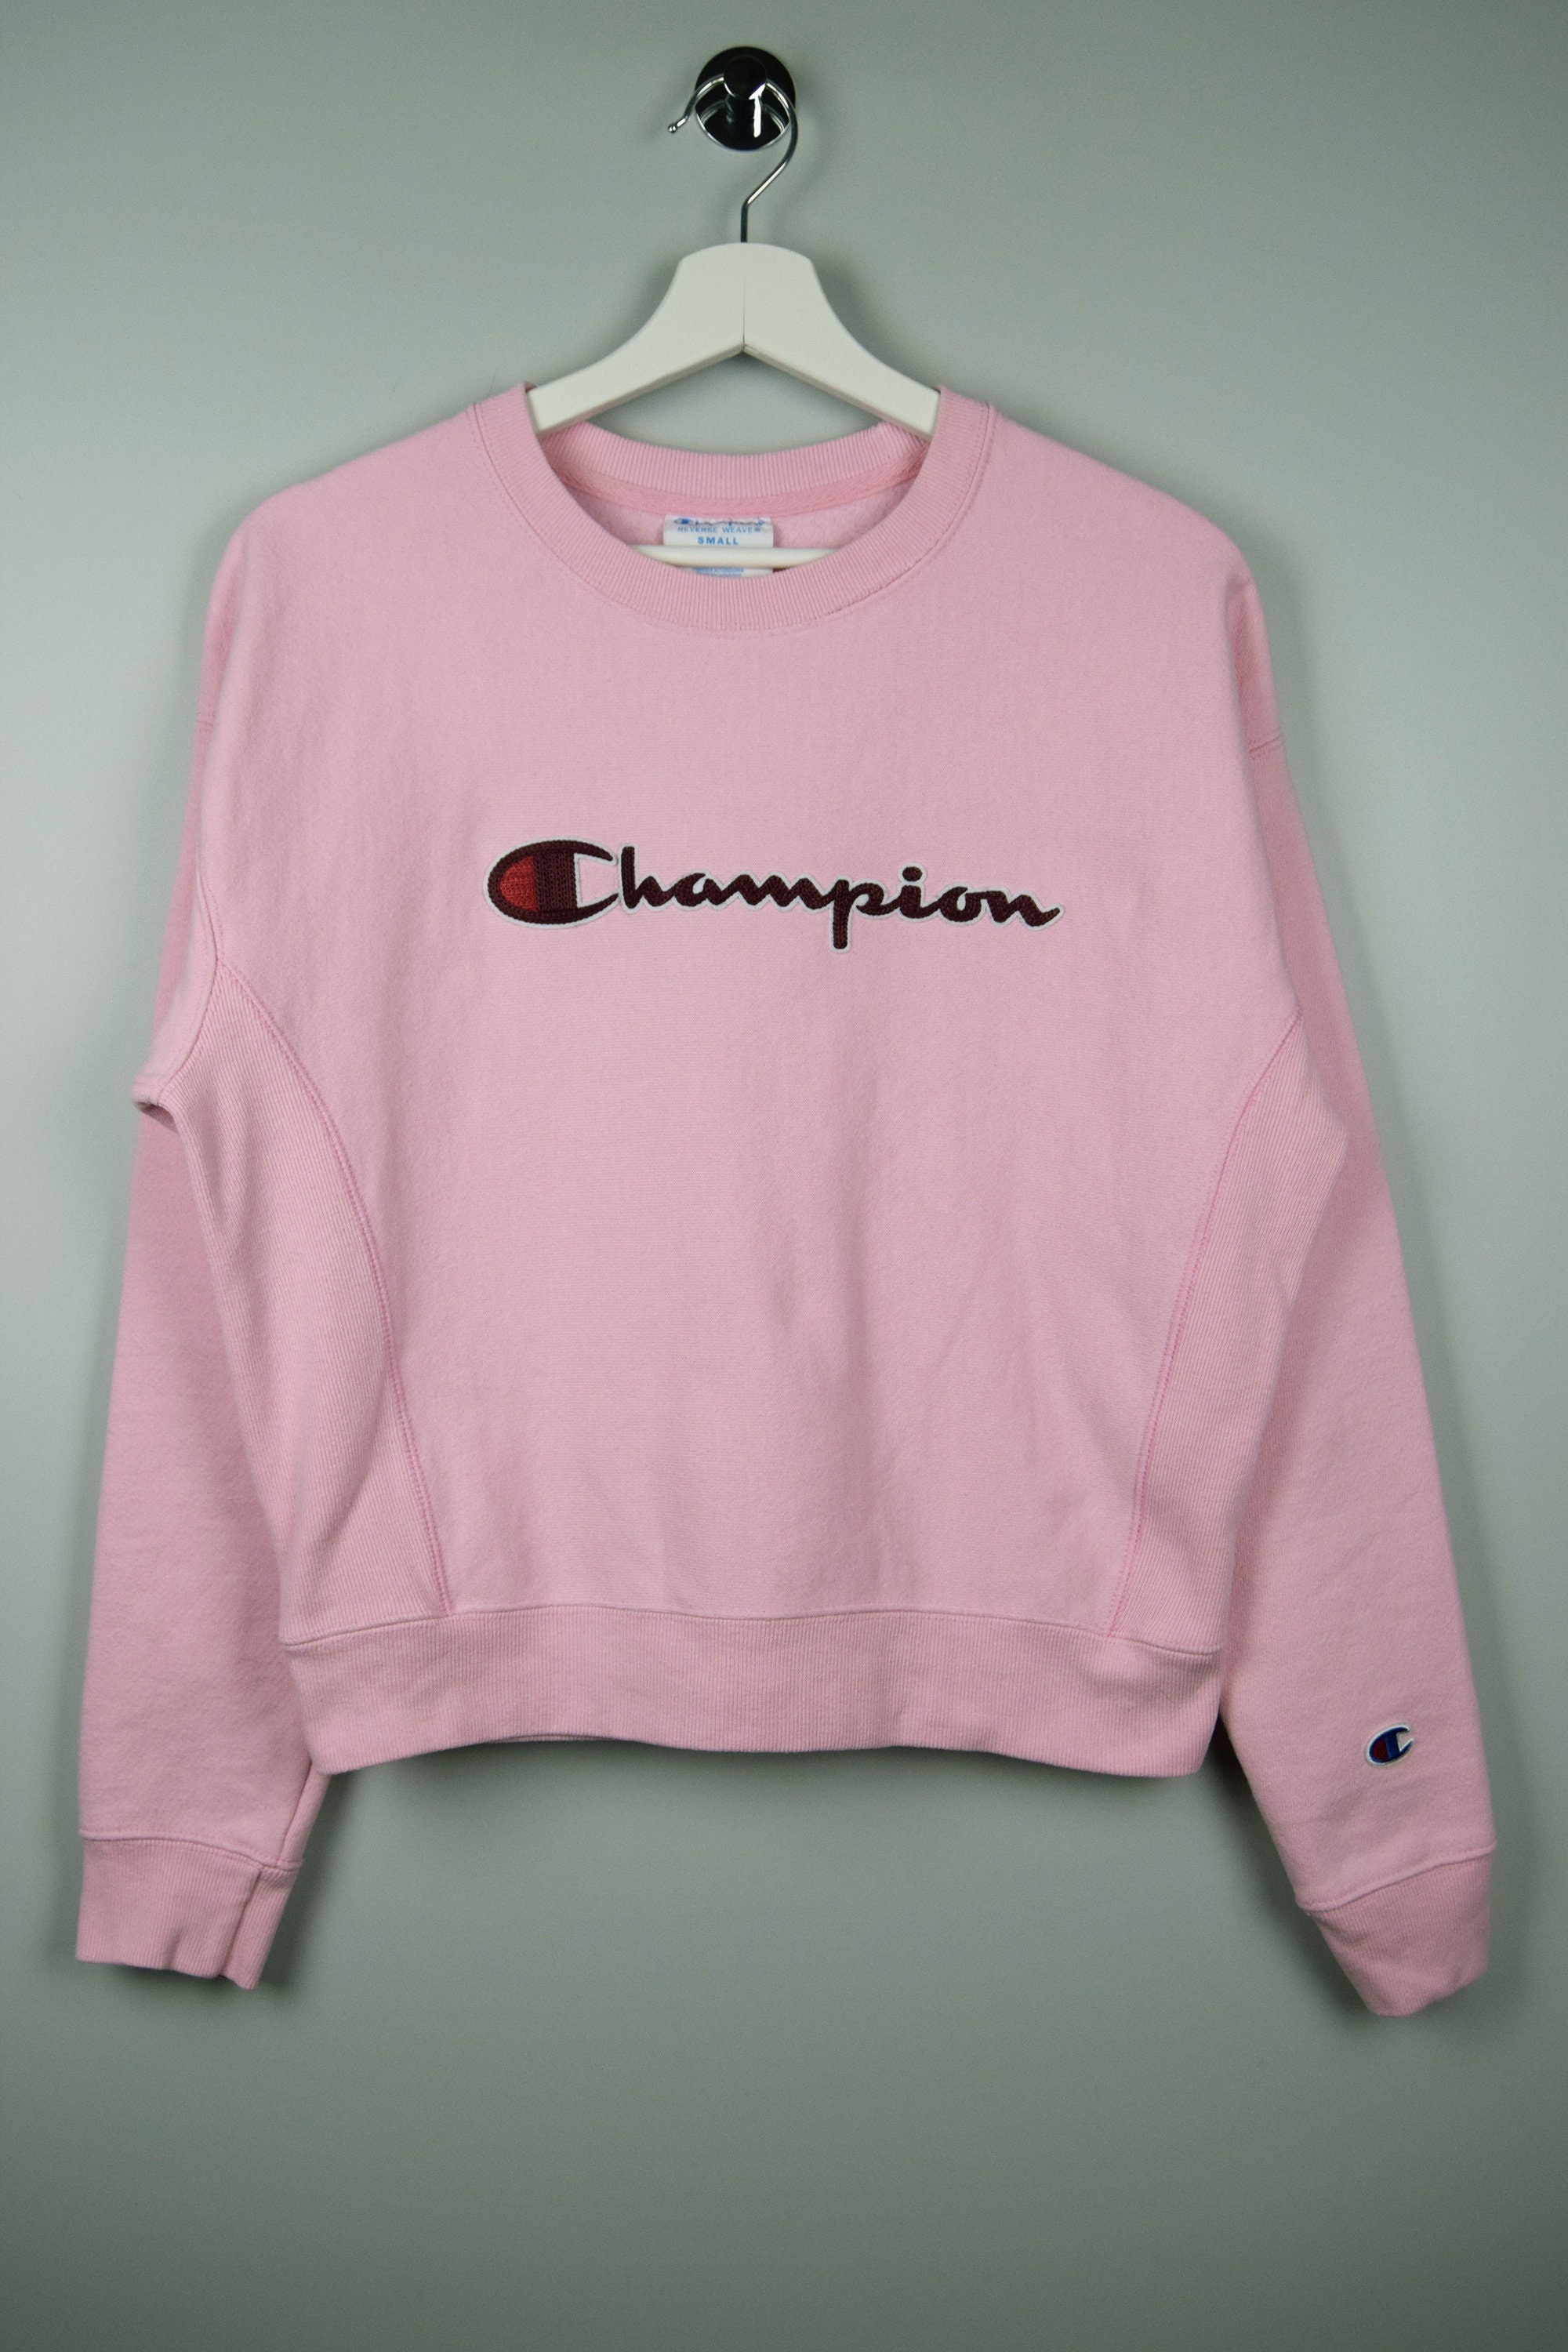 Tænke Slagskib kyst Vintage Champion Reverse Weave Crewneck Sweatshirt Pink - Etsy